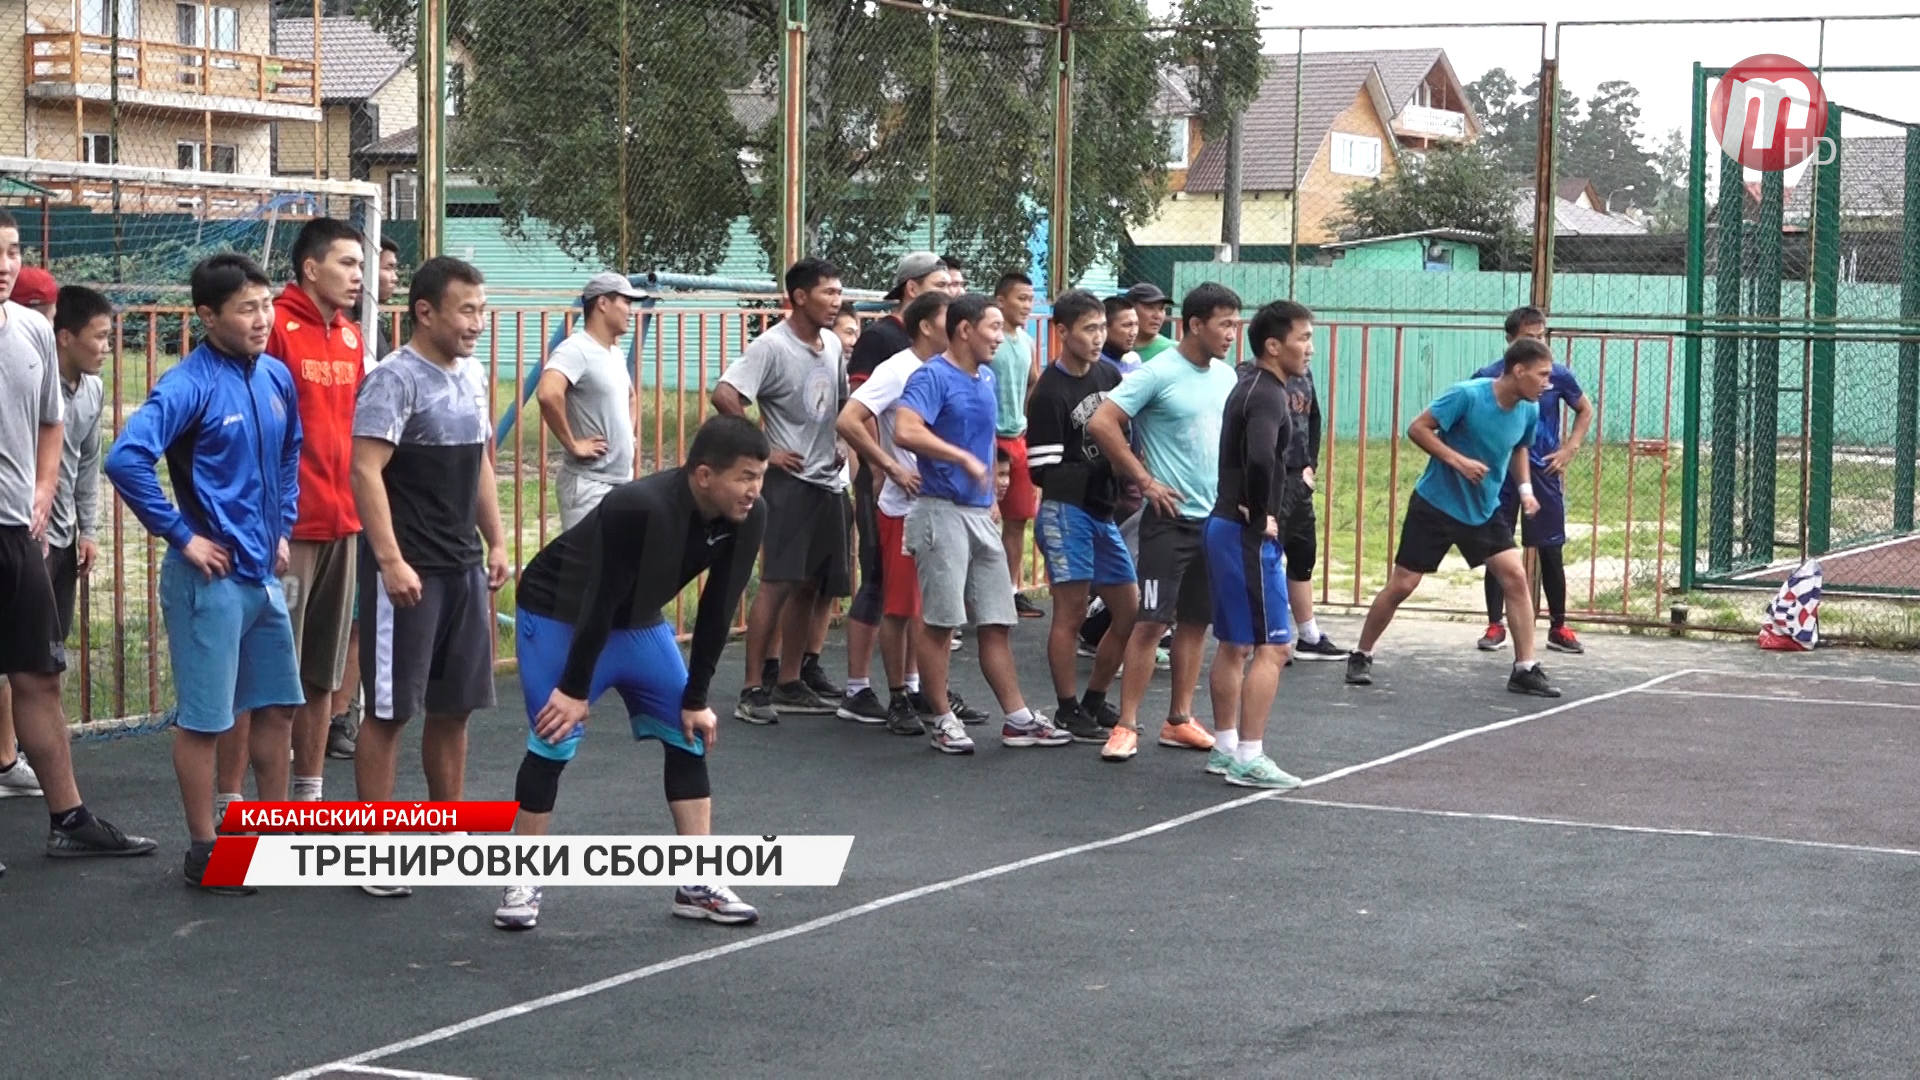 Сборная Бурятии по спортивной борьбе готовится к чемпионату России